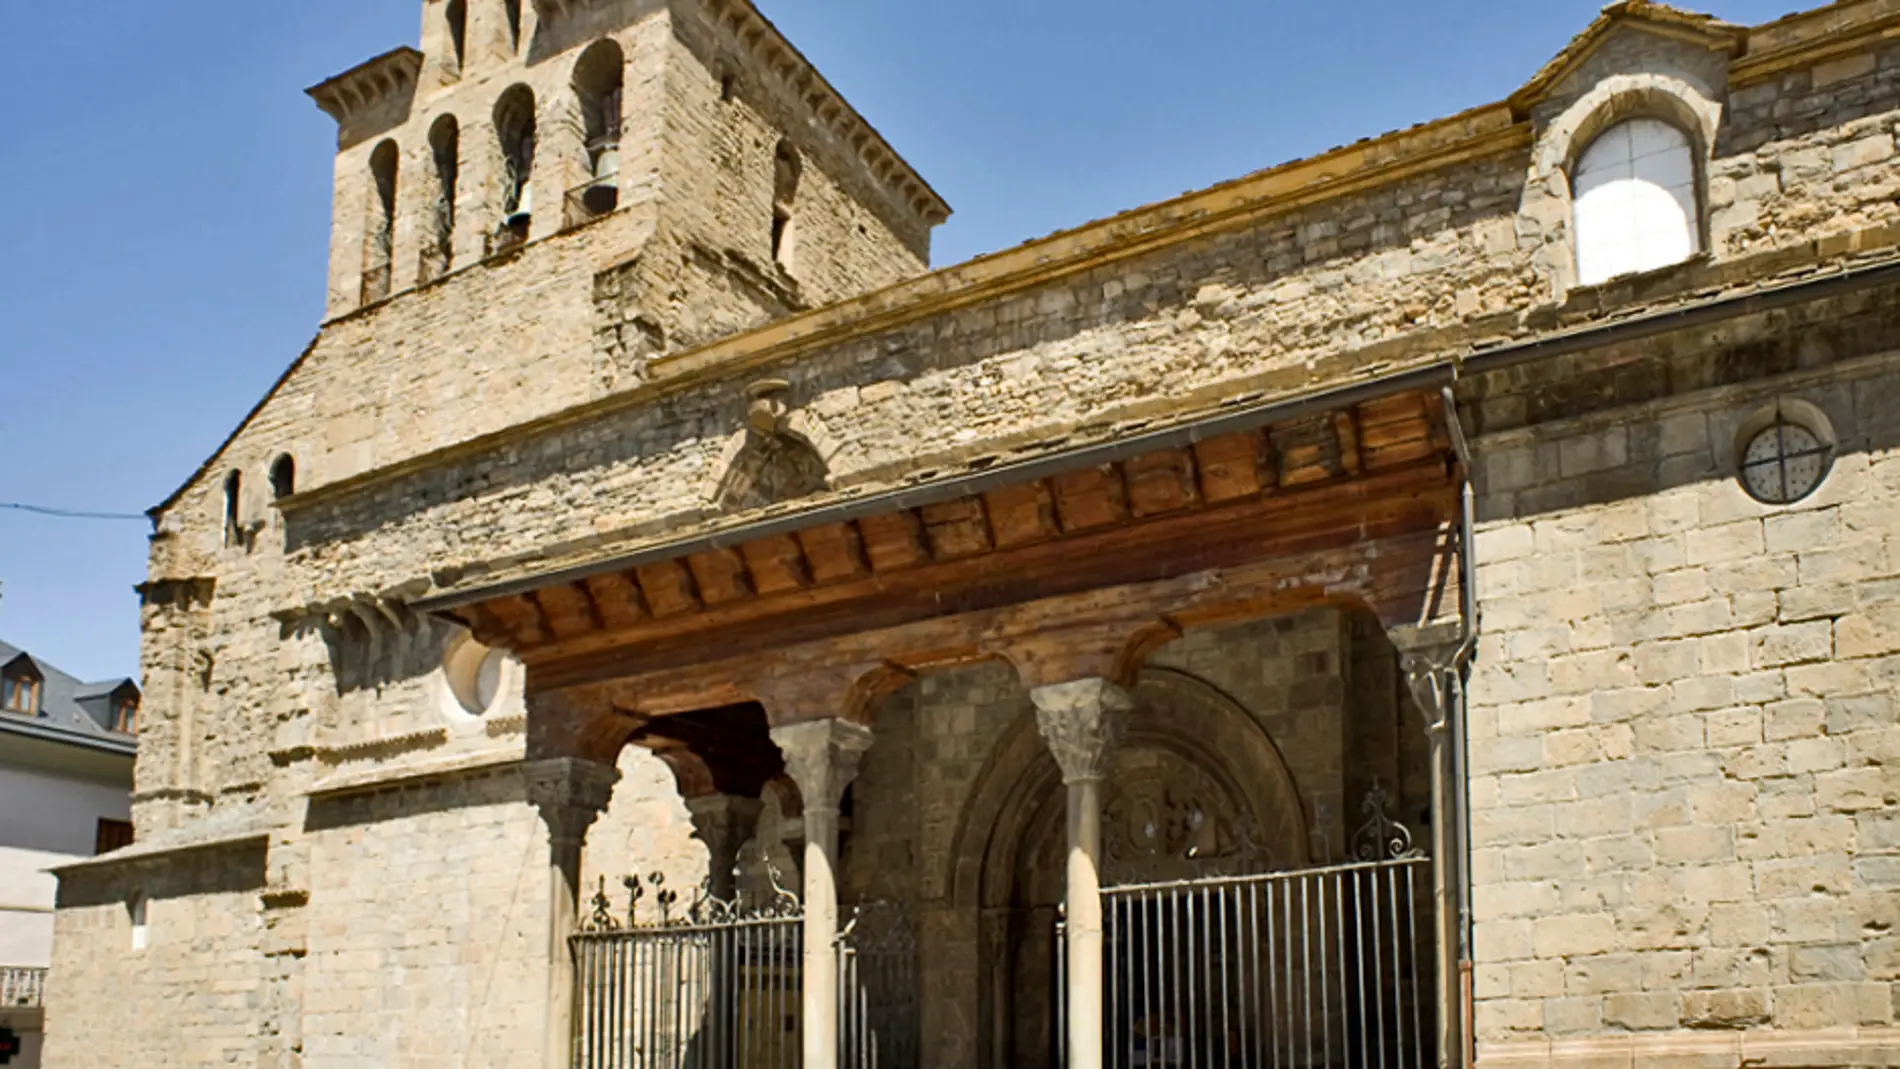 Ruta del Santo Grial en la provincia de Huesca: todo lo que debes saber